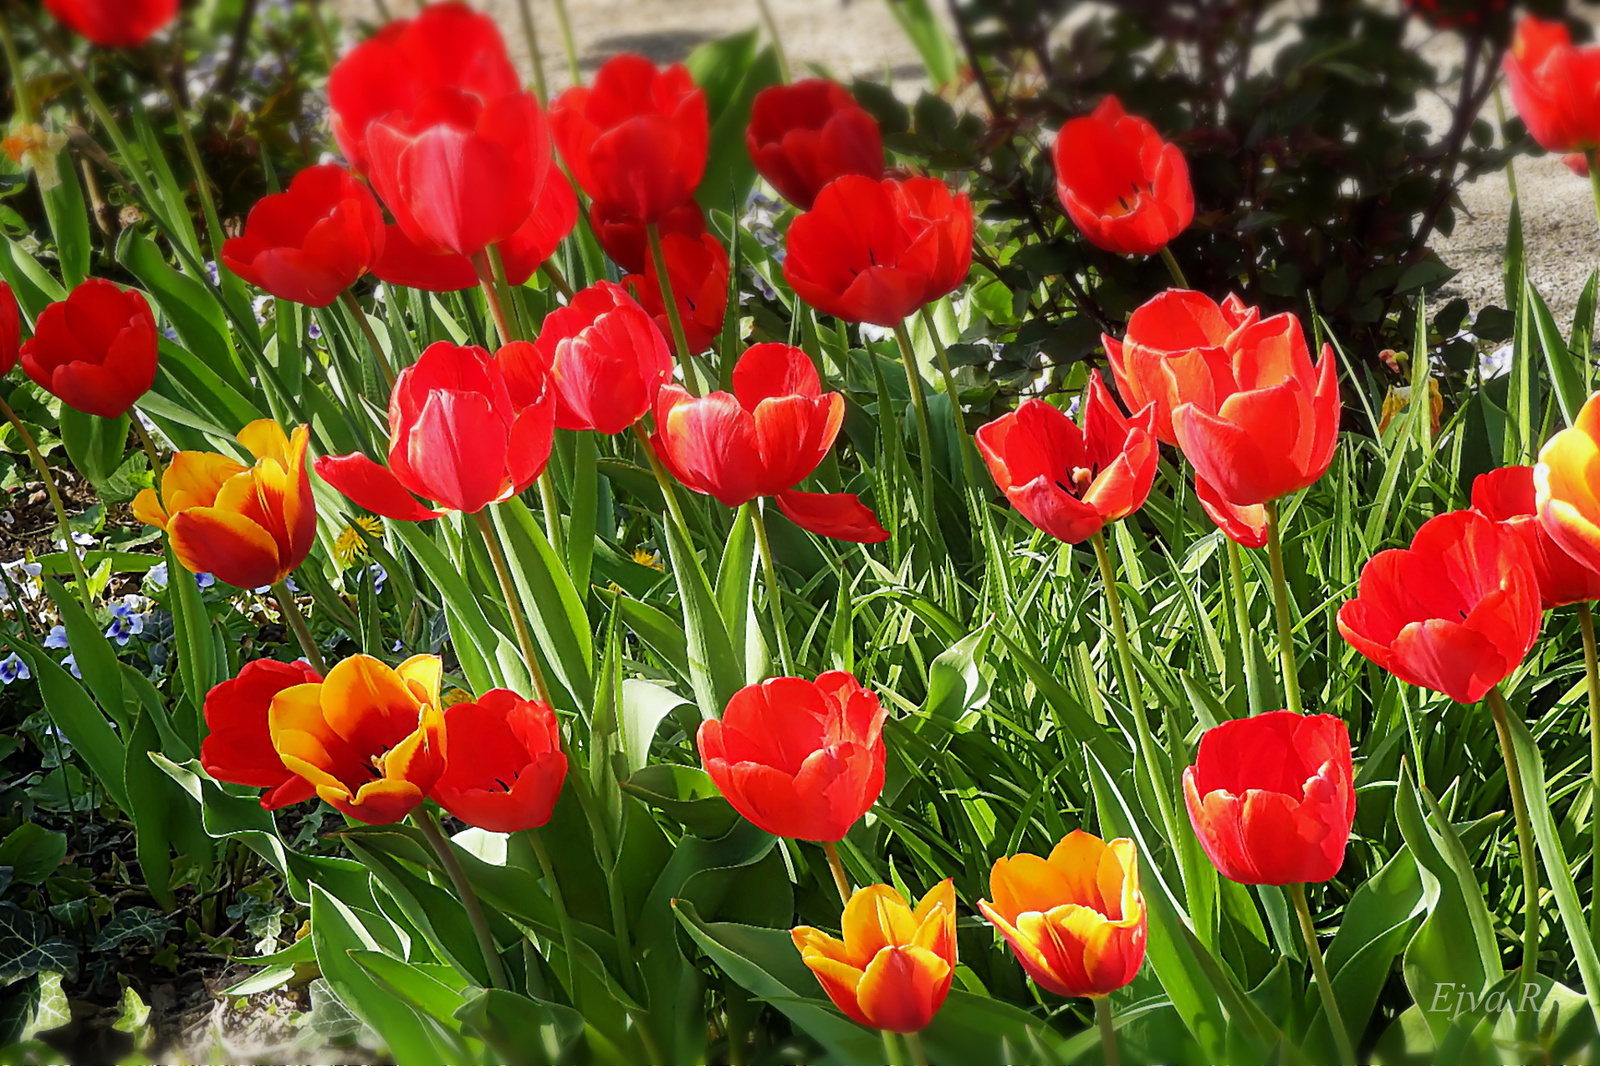 A tulipánok (Tulipa)